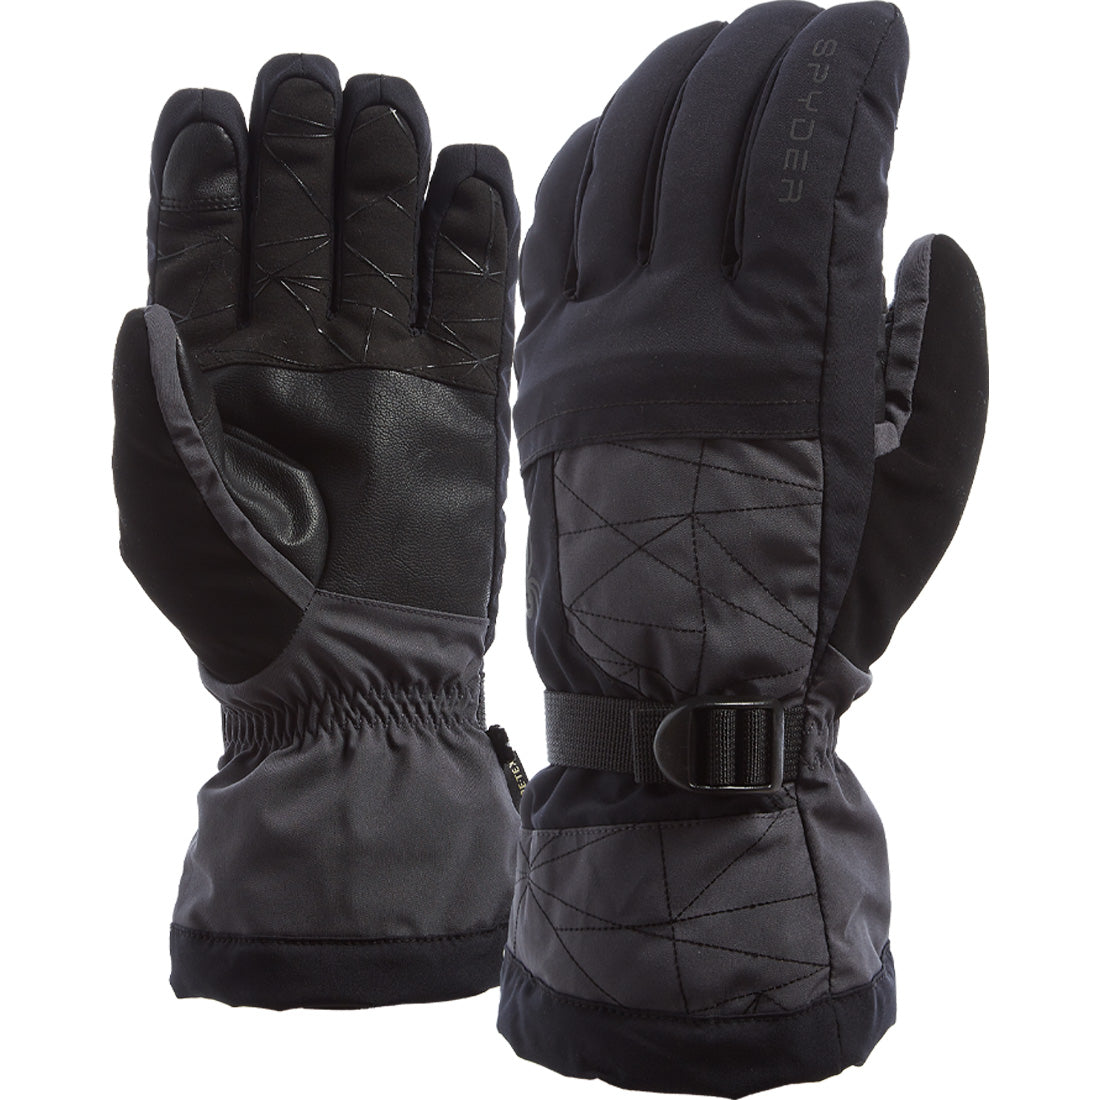 Spyder Overweb GTX Ski Glove - Men's